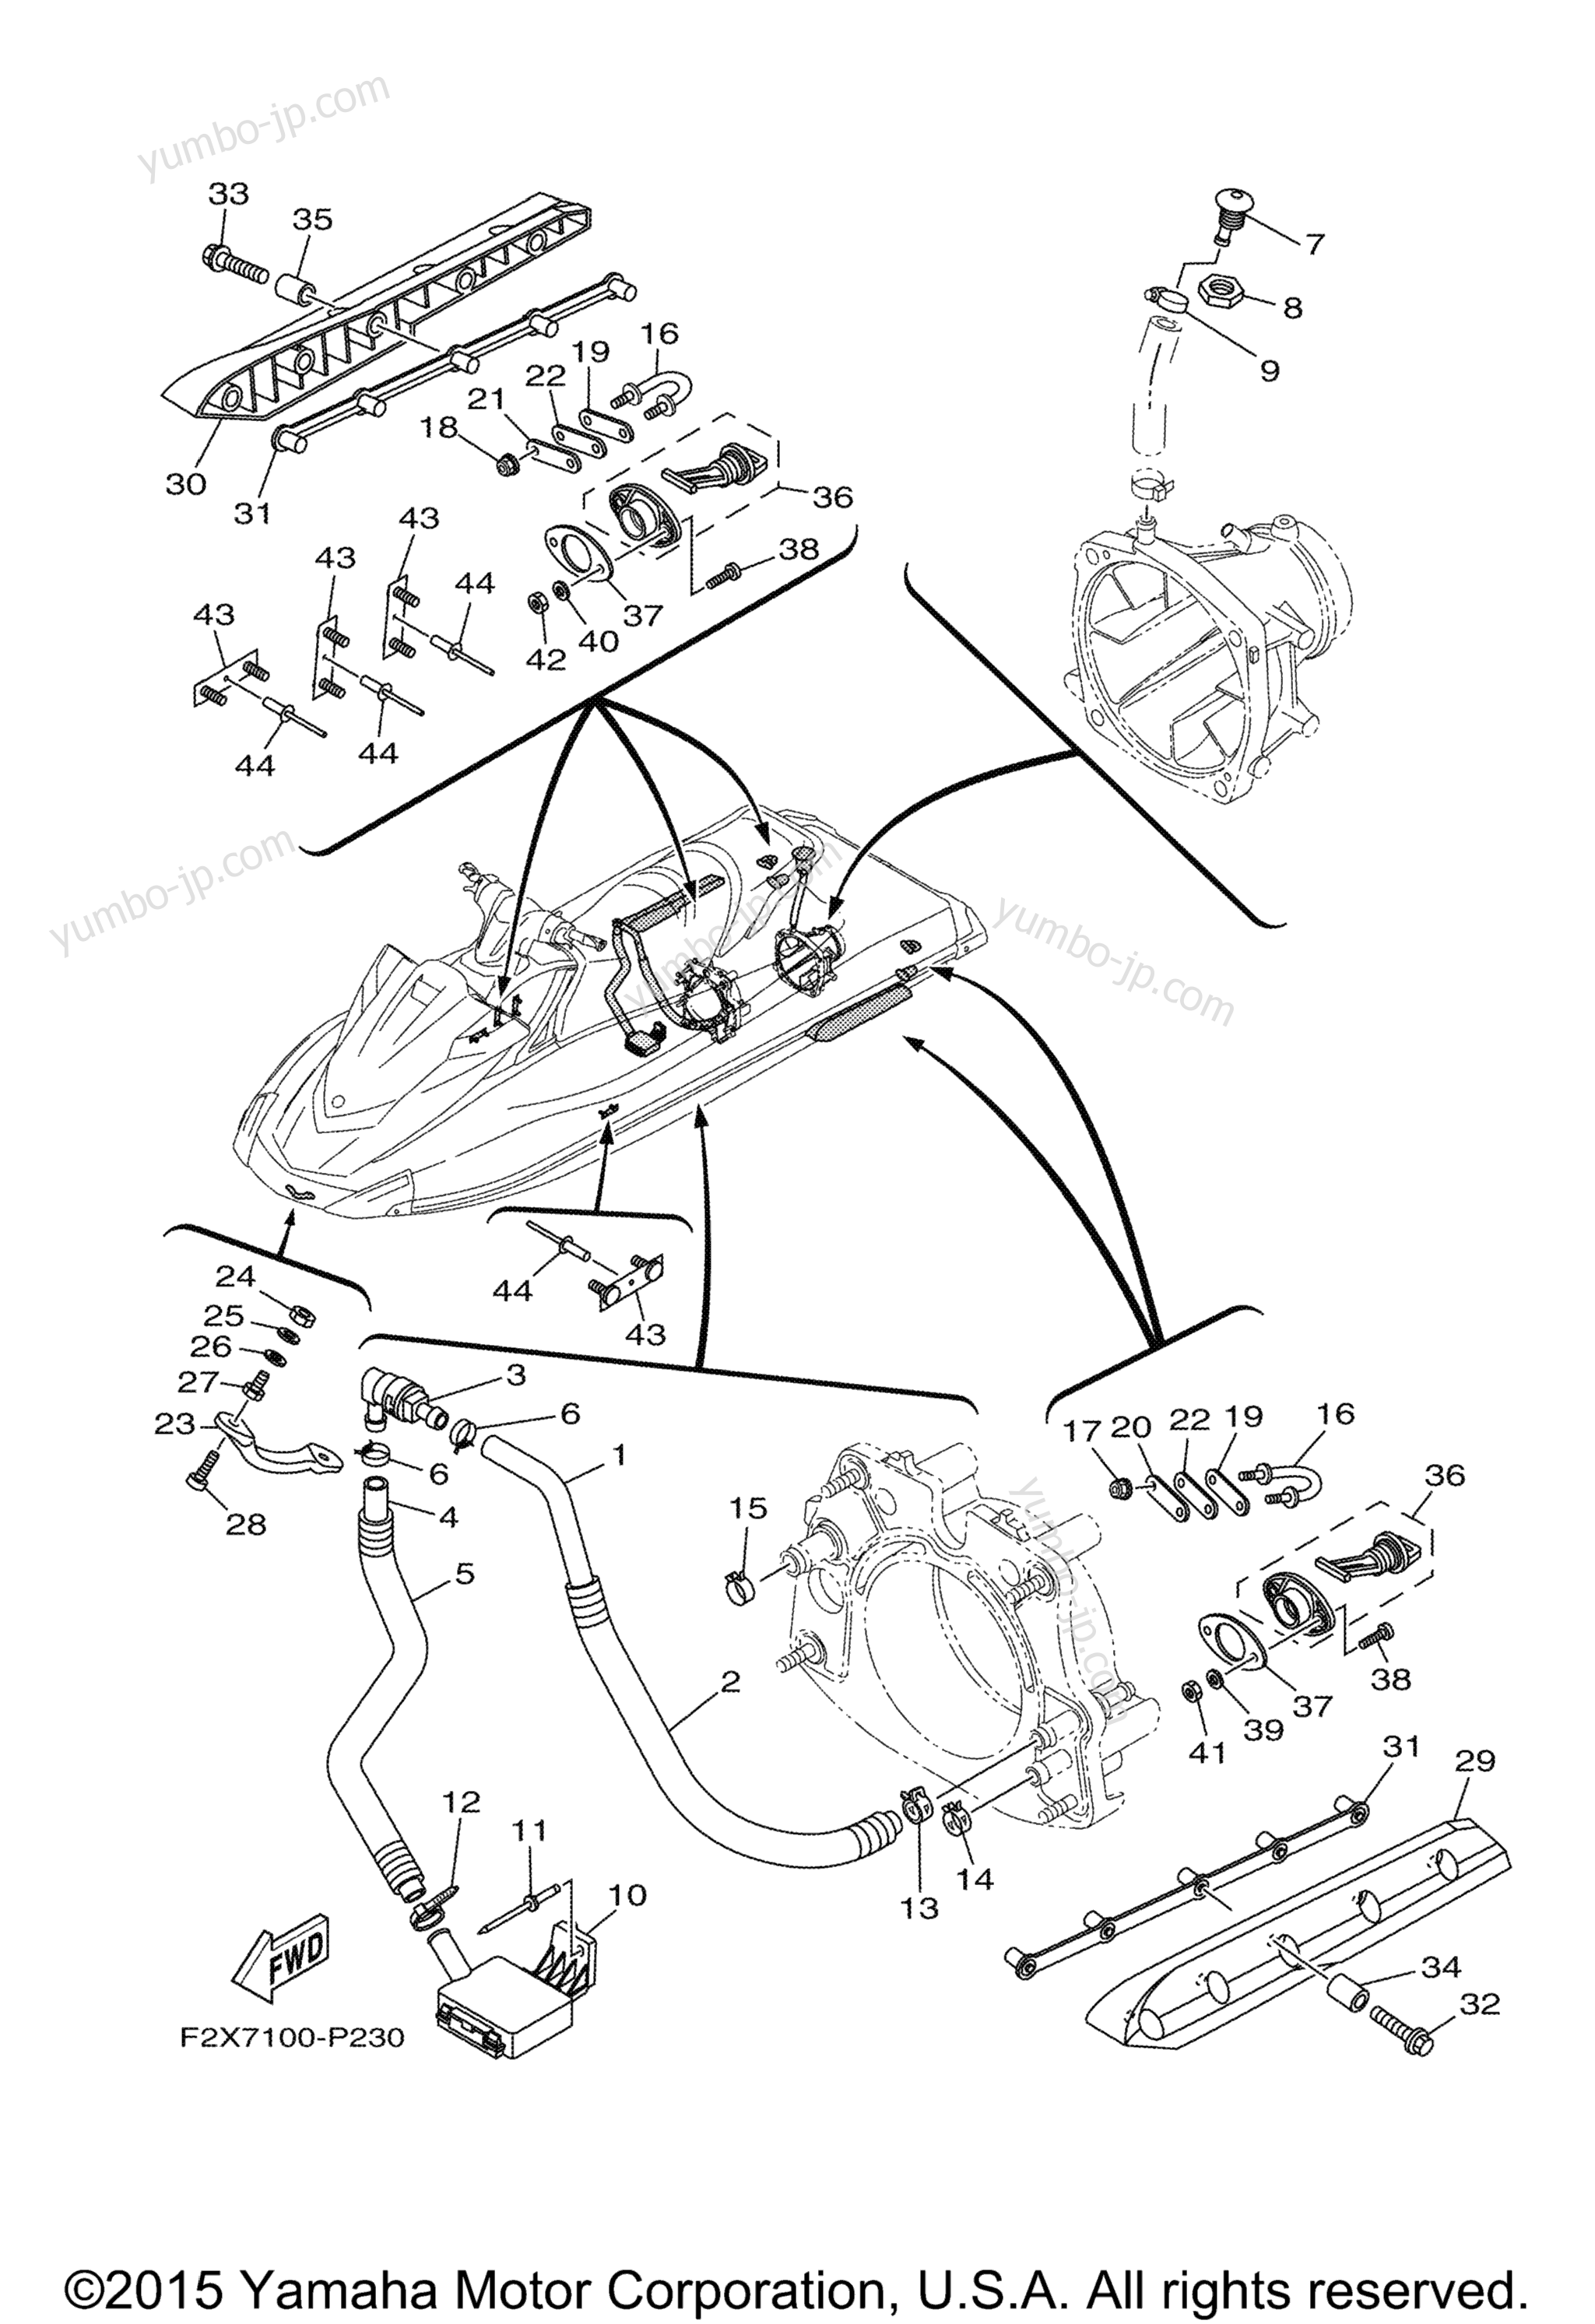 Hull & Deck для гидроциклов YAMAHA WAVERUNNER VX (VX1100CP) 2015 г.